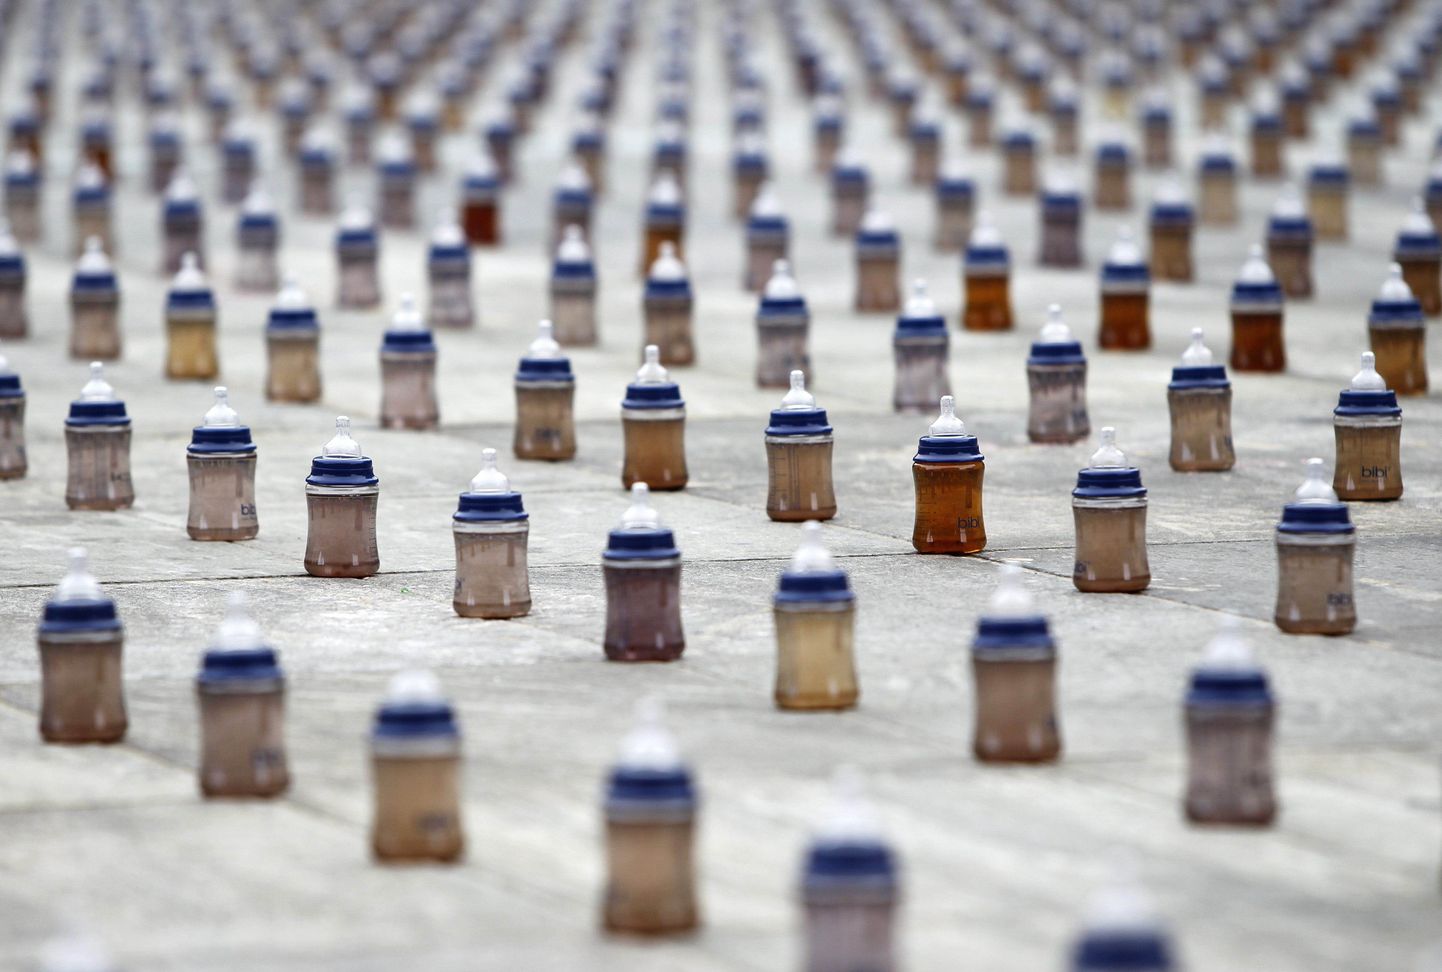 Neli tuhat lutipudelit saastunud veega